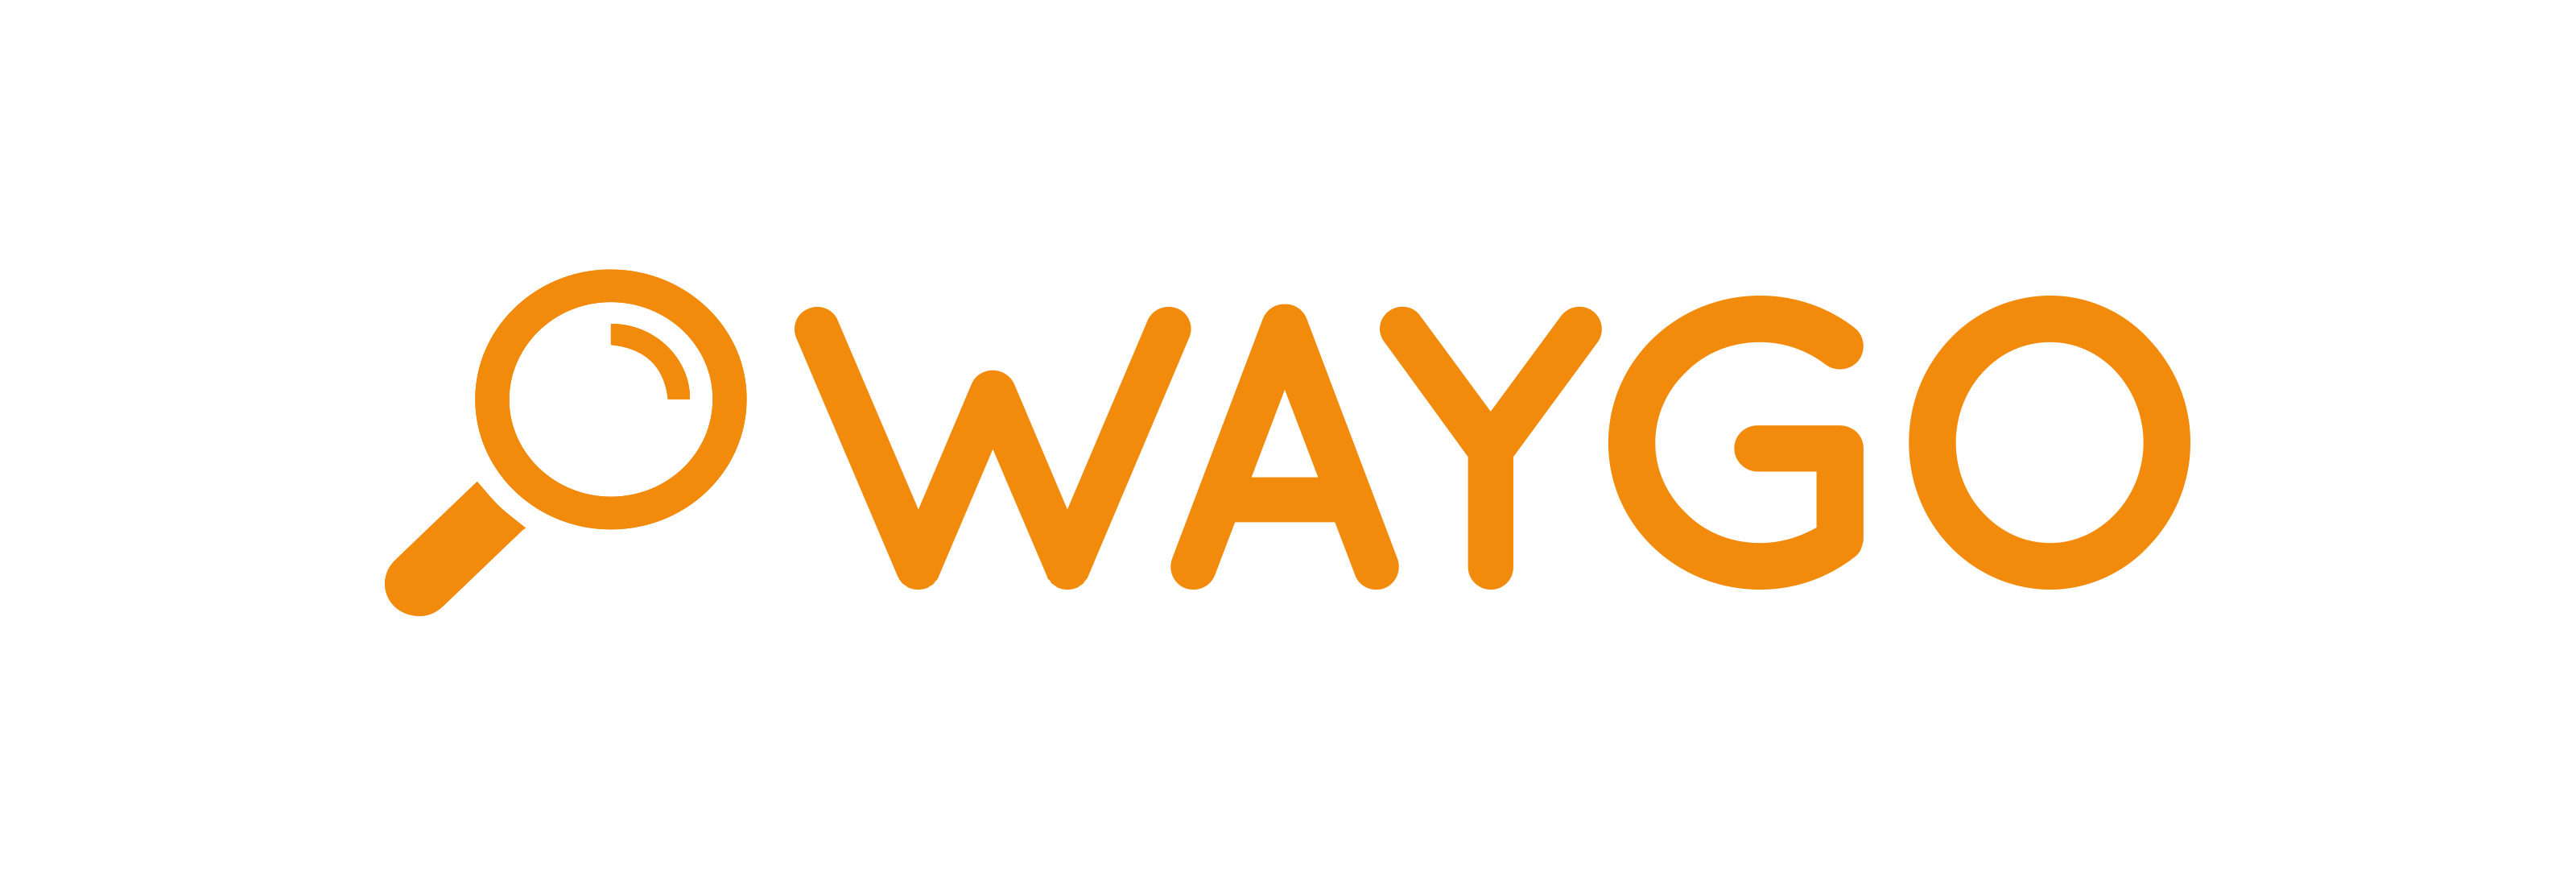 Waygo logo color